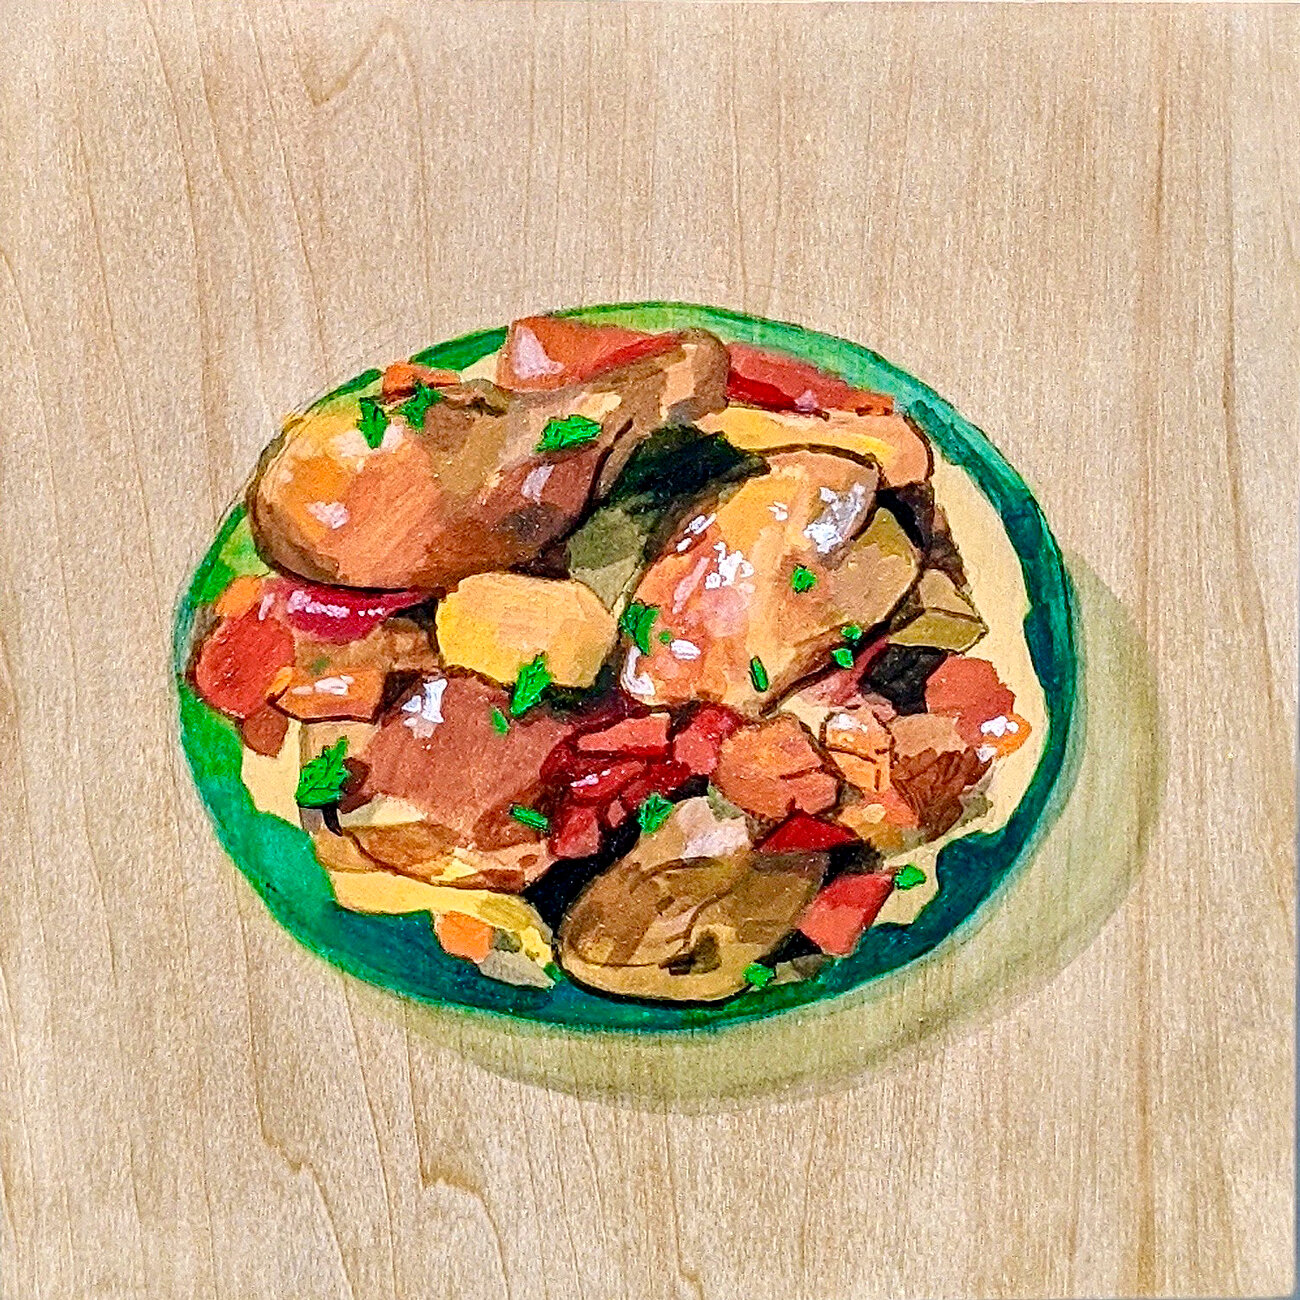  "Comfort Food" Series: Afritada | Acrylic on Wood | 8”x 8”